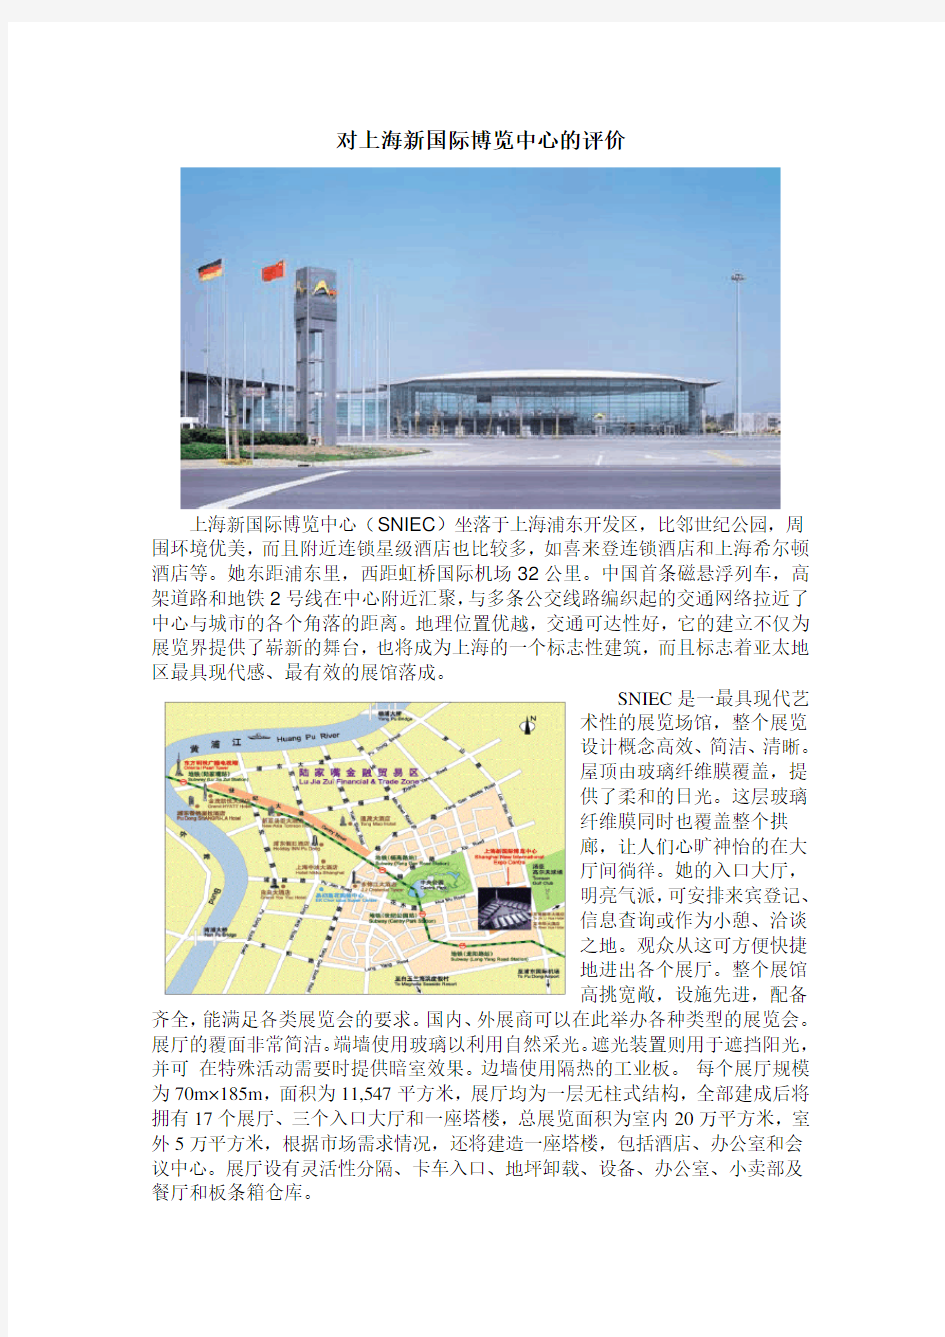 对上海新国际博览中心的评价